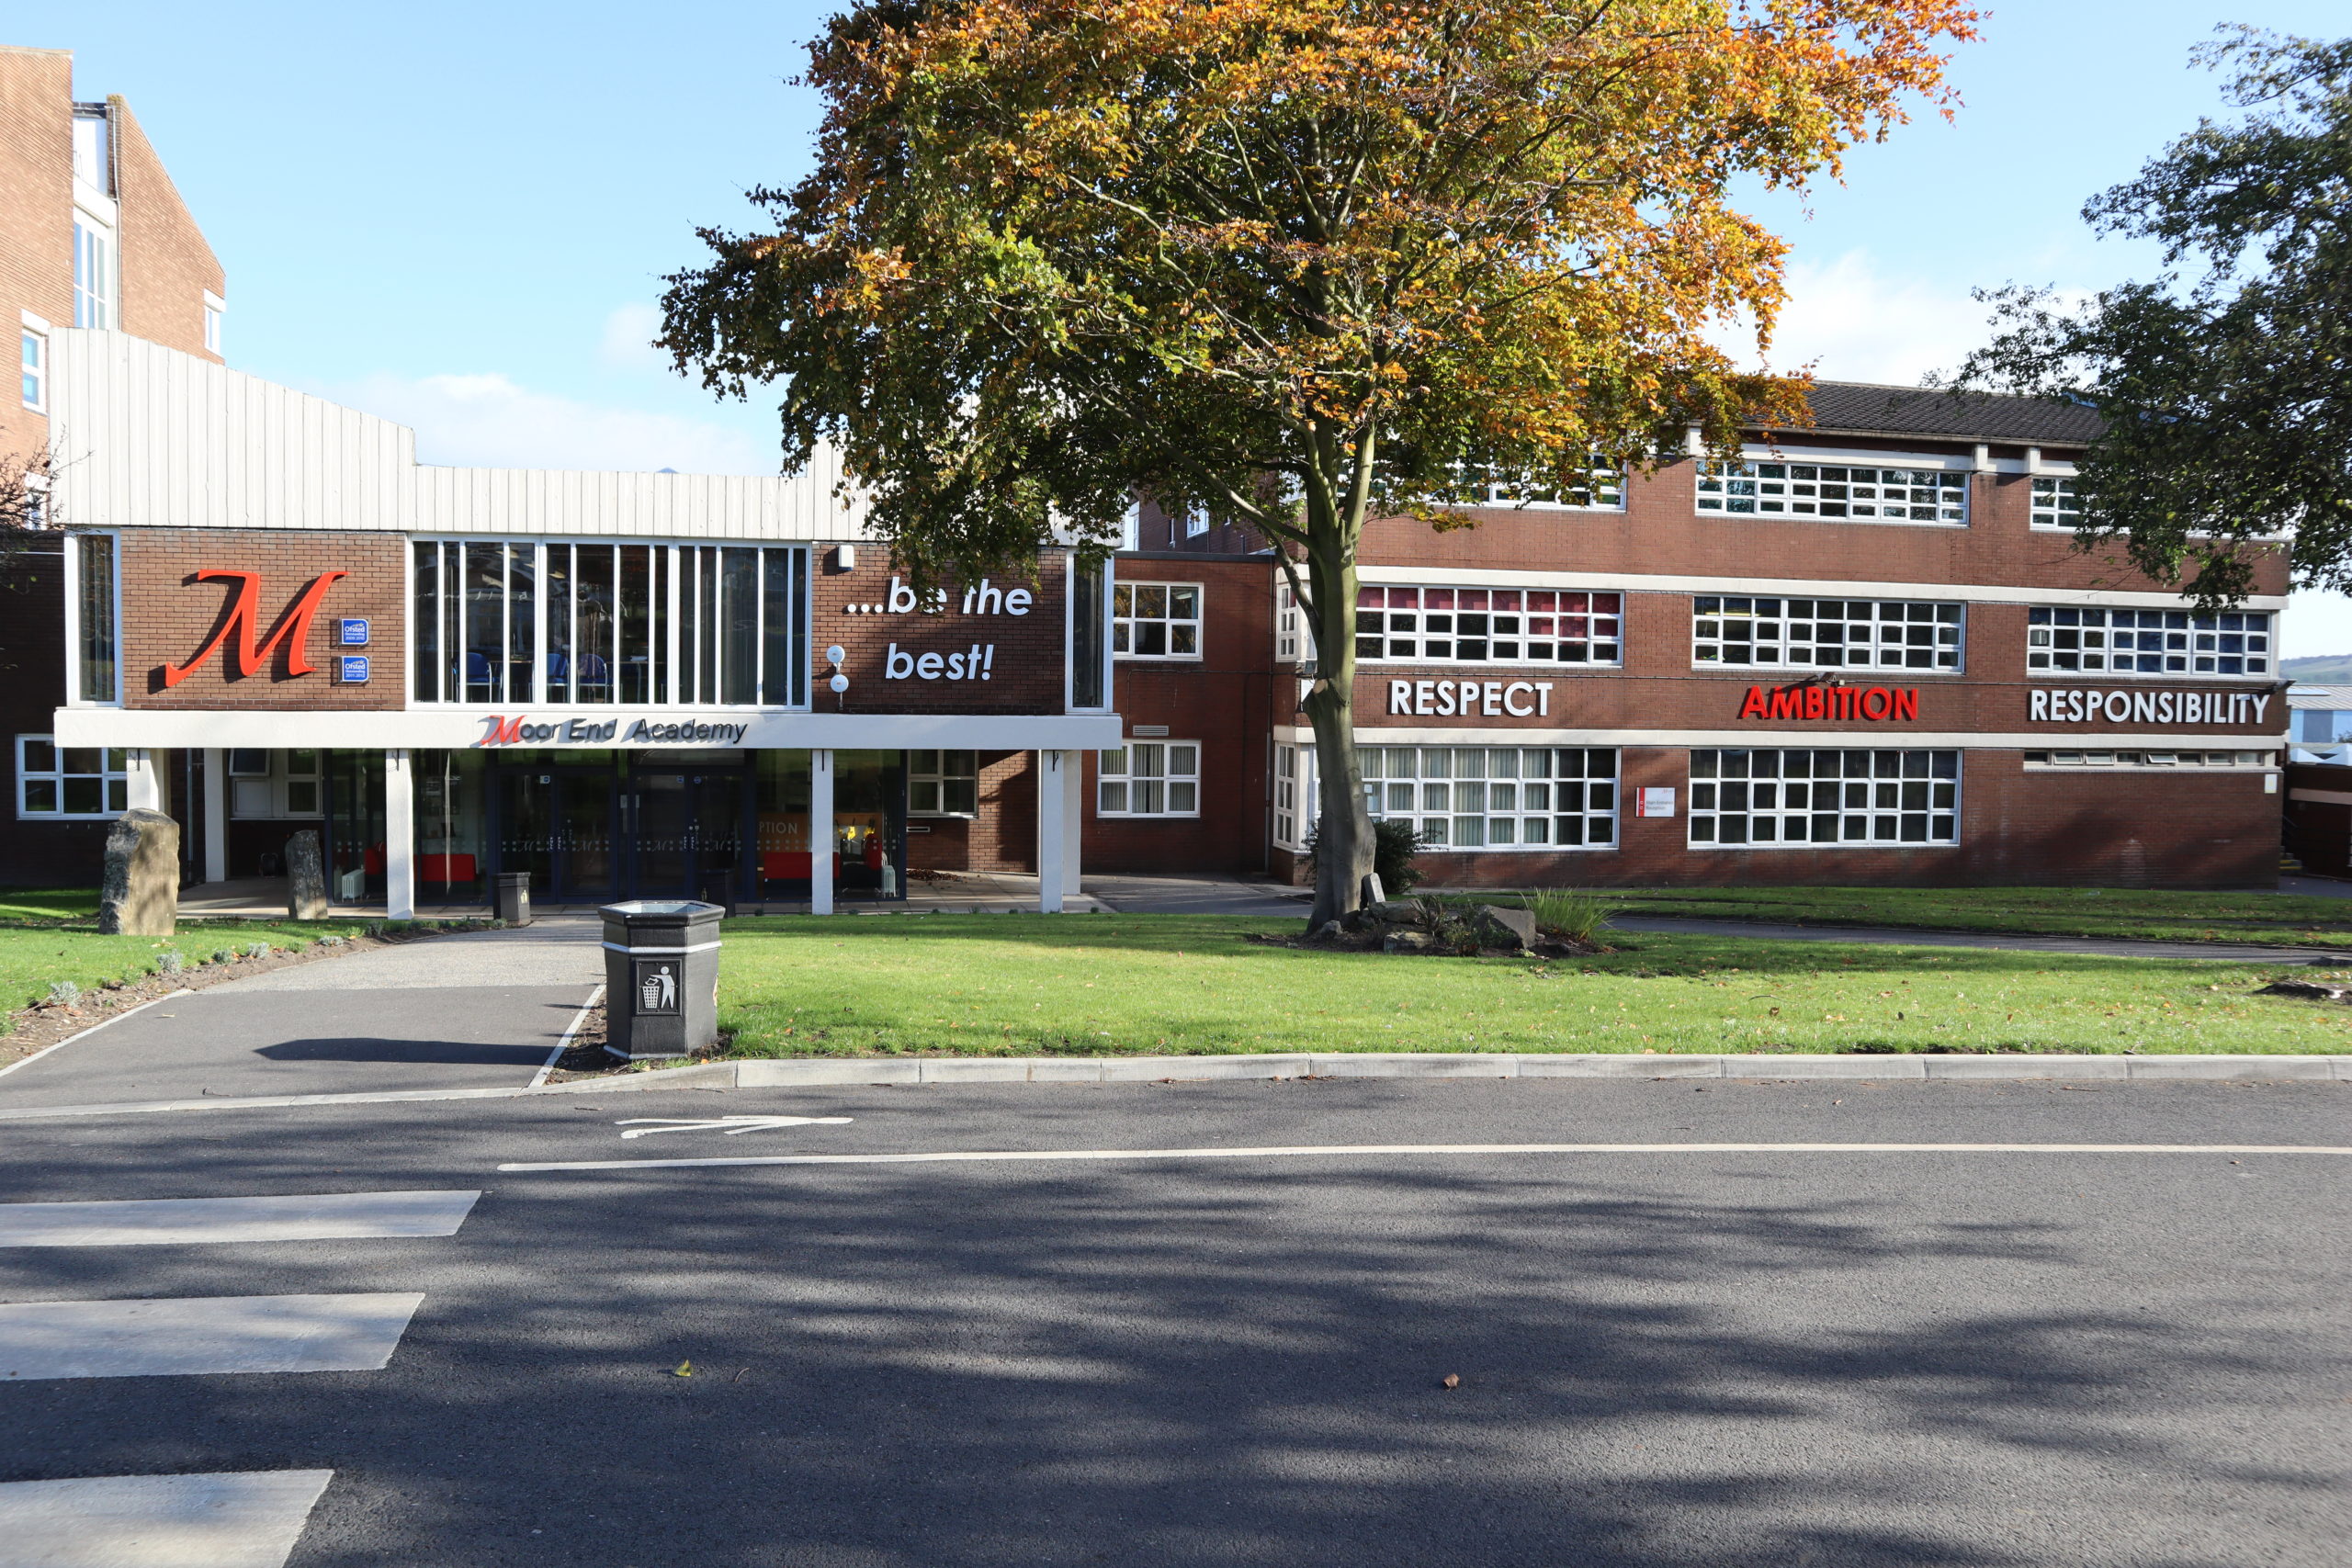 Moor End Academy